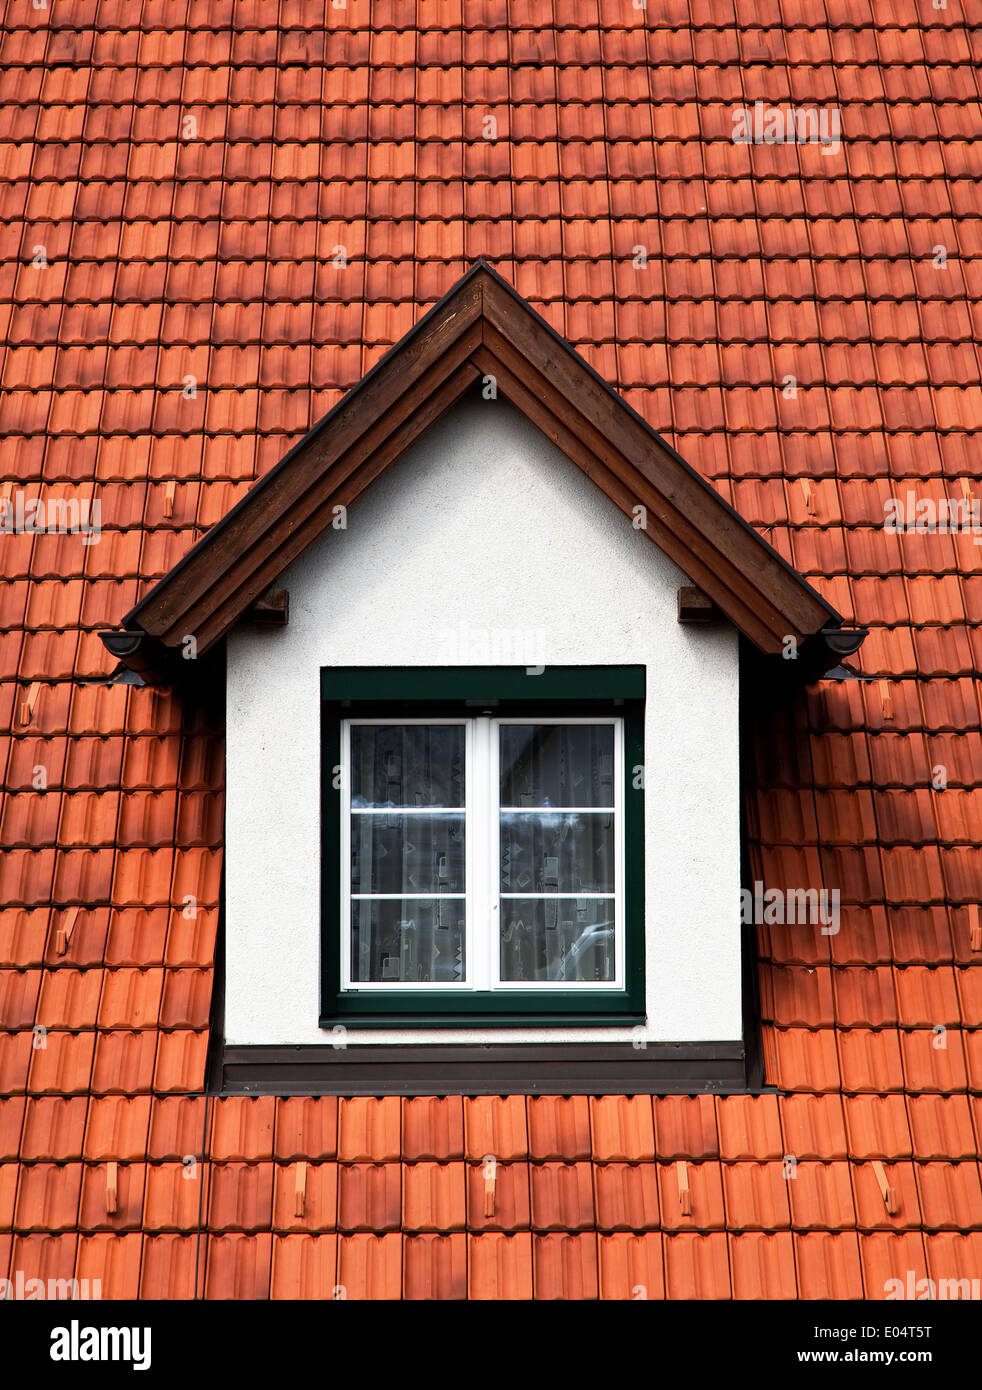 Dormer with rung window in a brick covered roof, Dachgaube mit Sprossenfenster in einem Ziegel gedeckten Dach Stock Photo